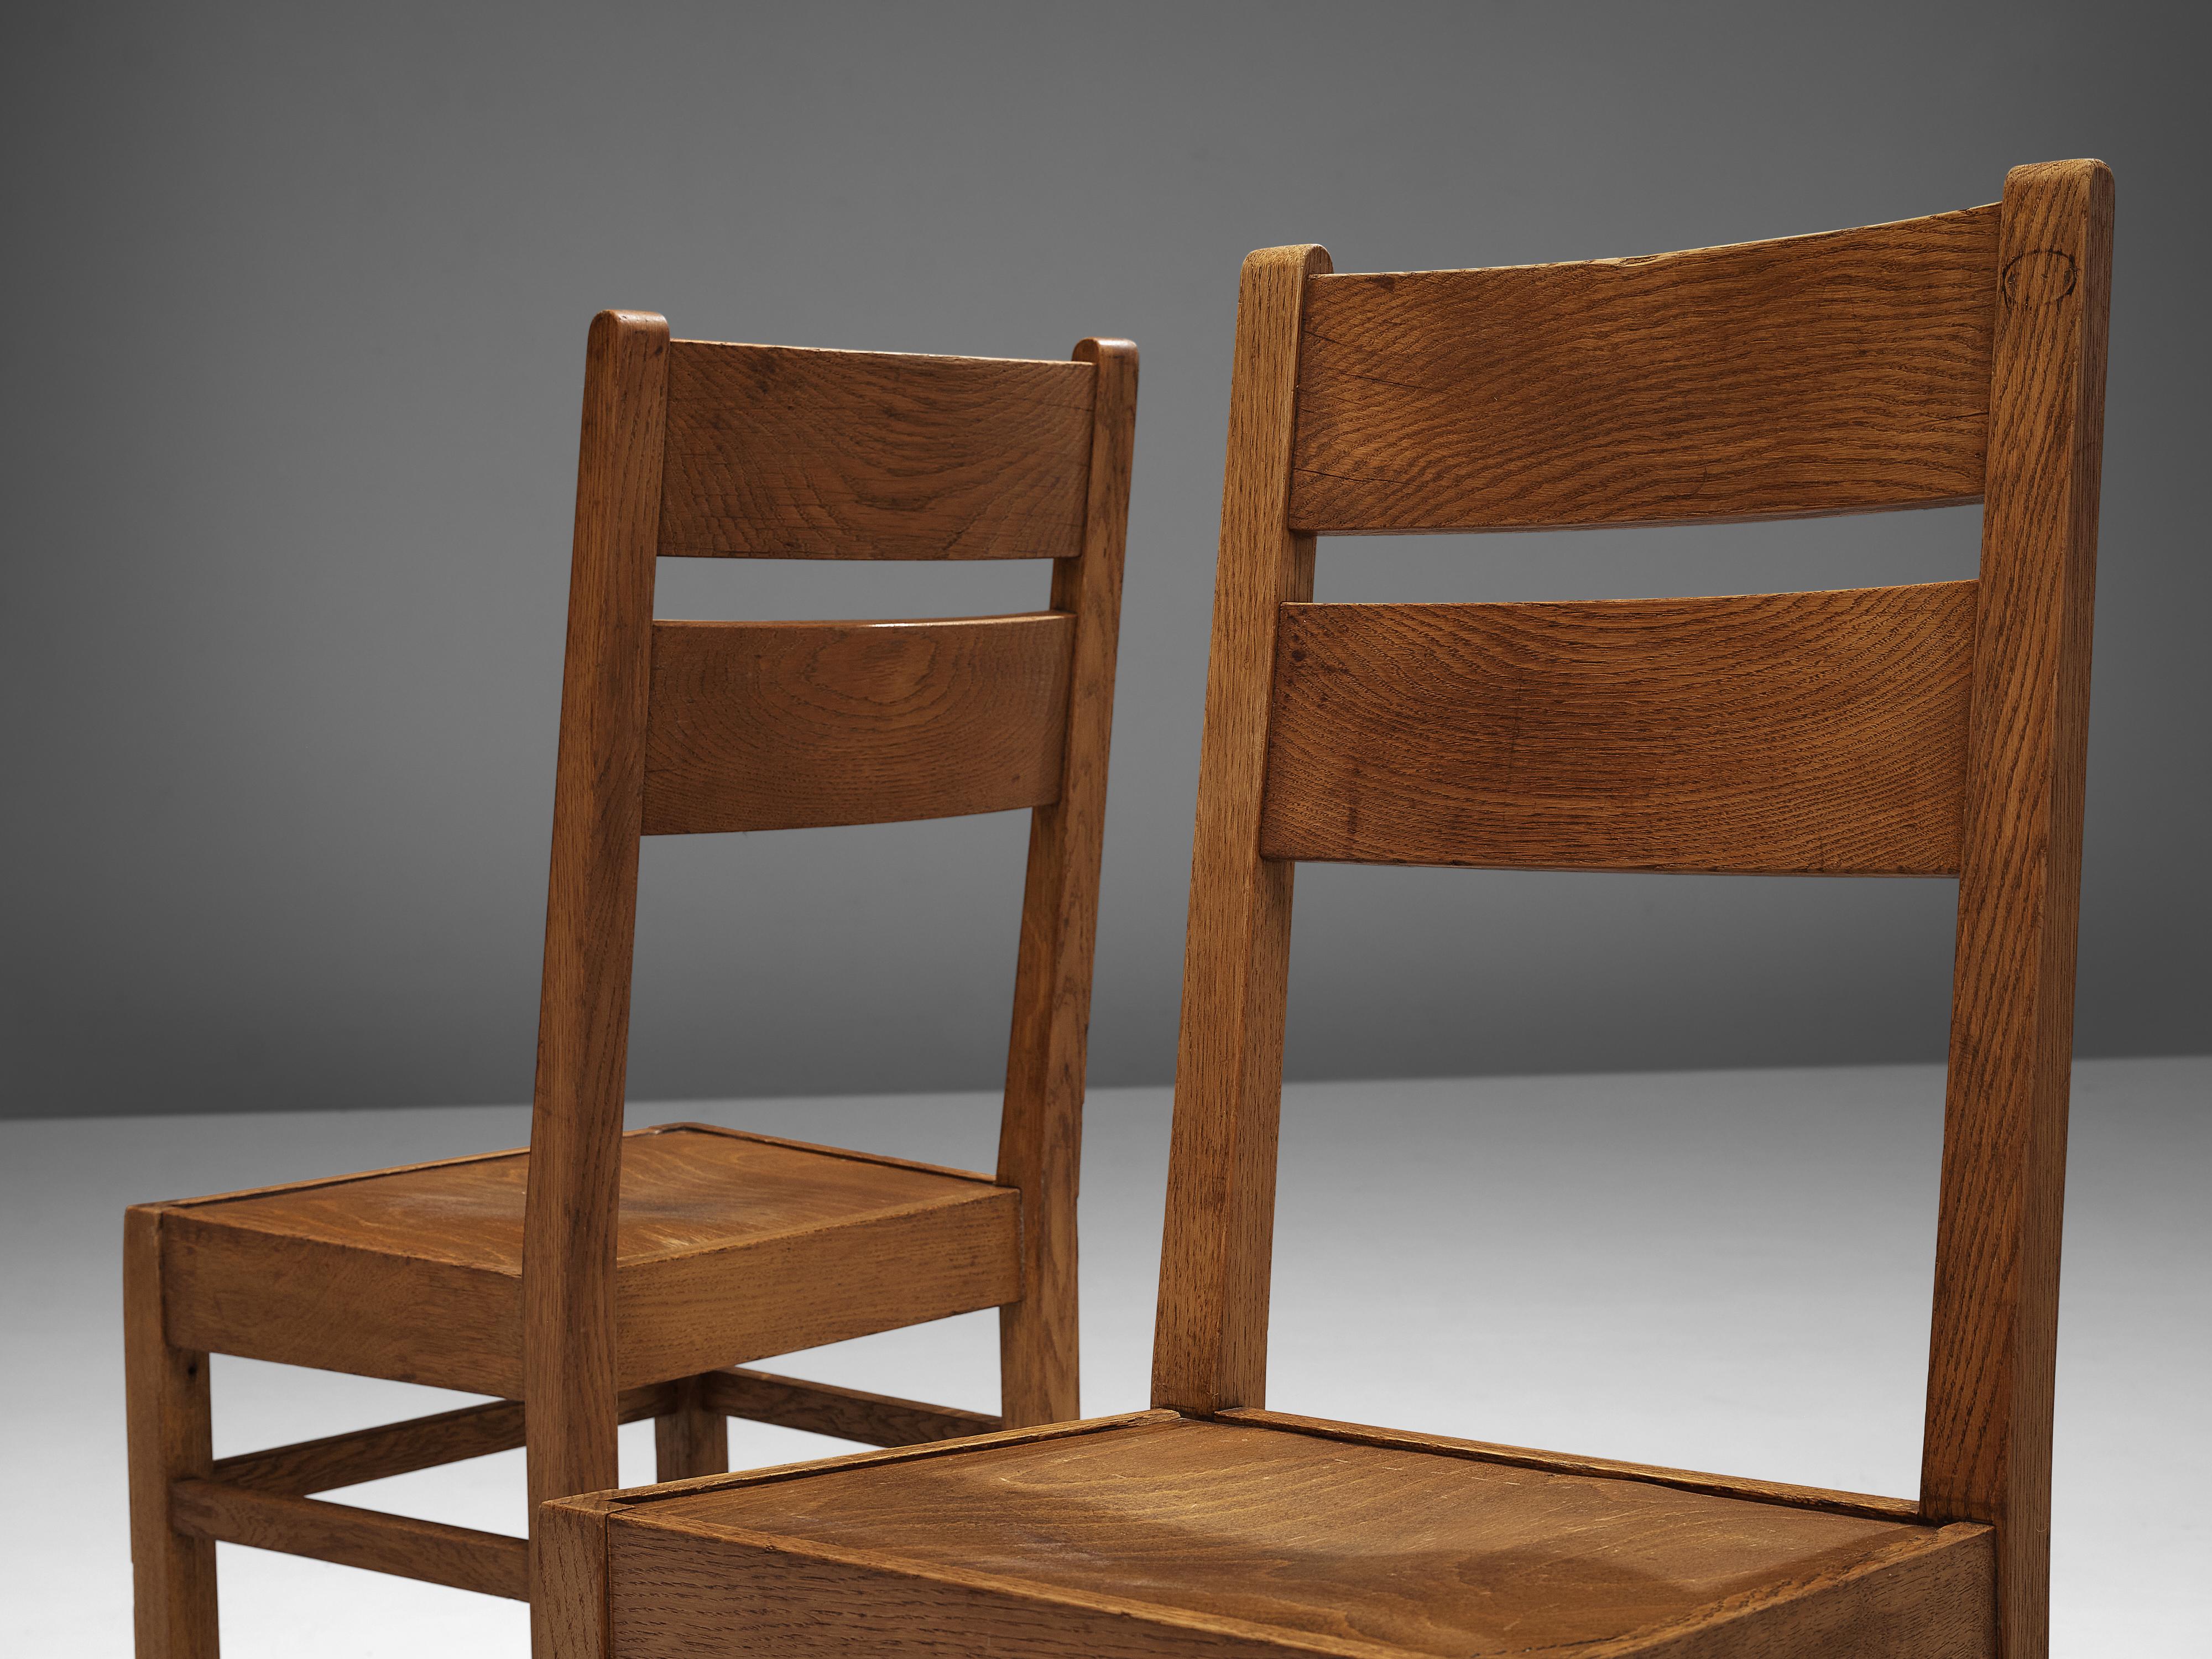 Dutch Dining Chairs in Oak